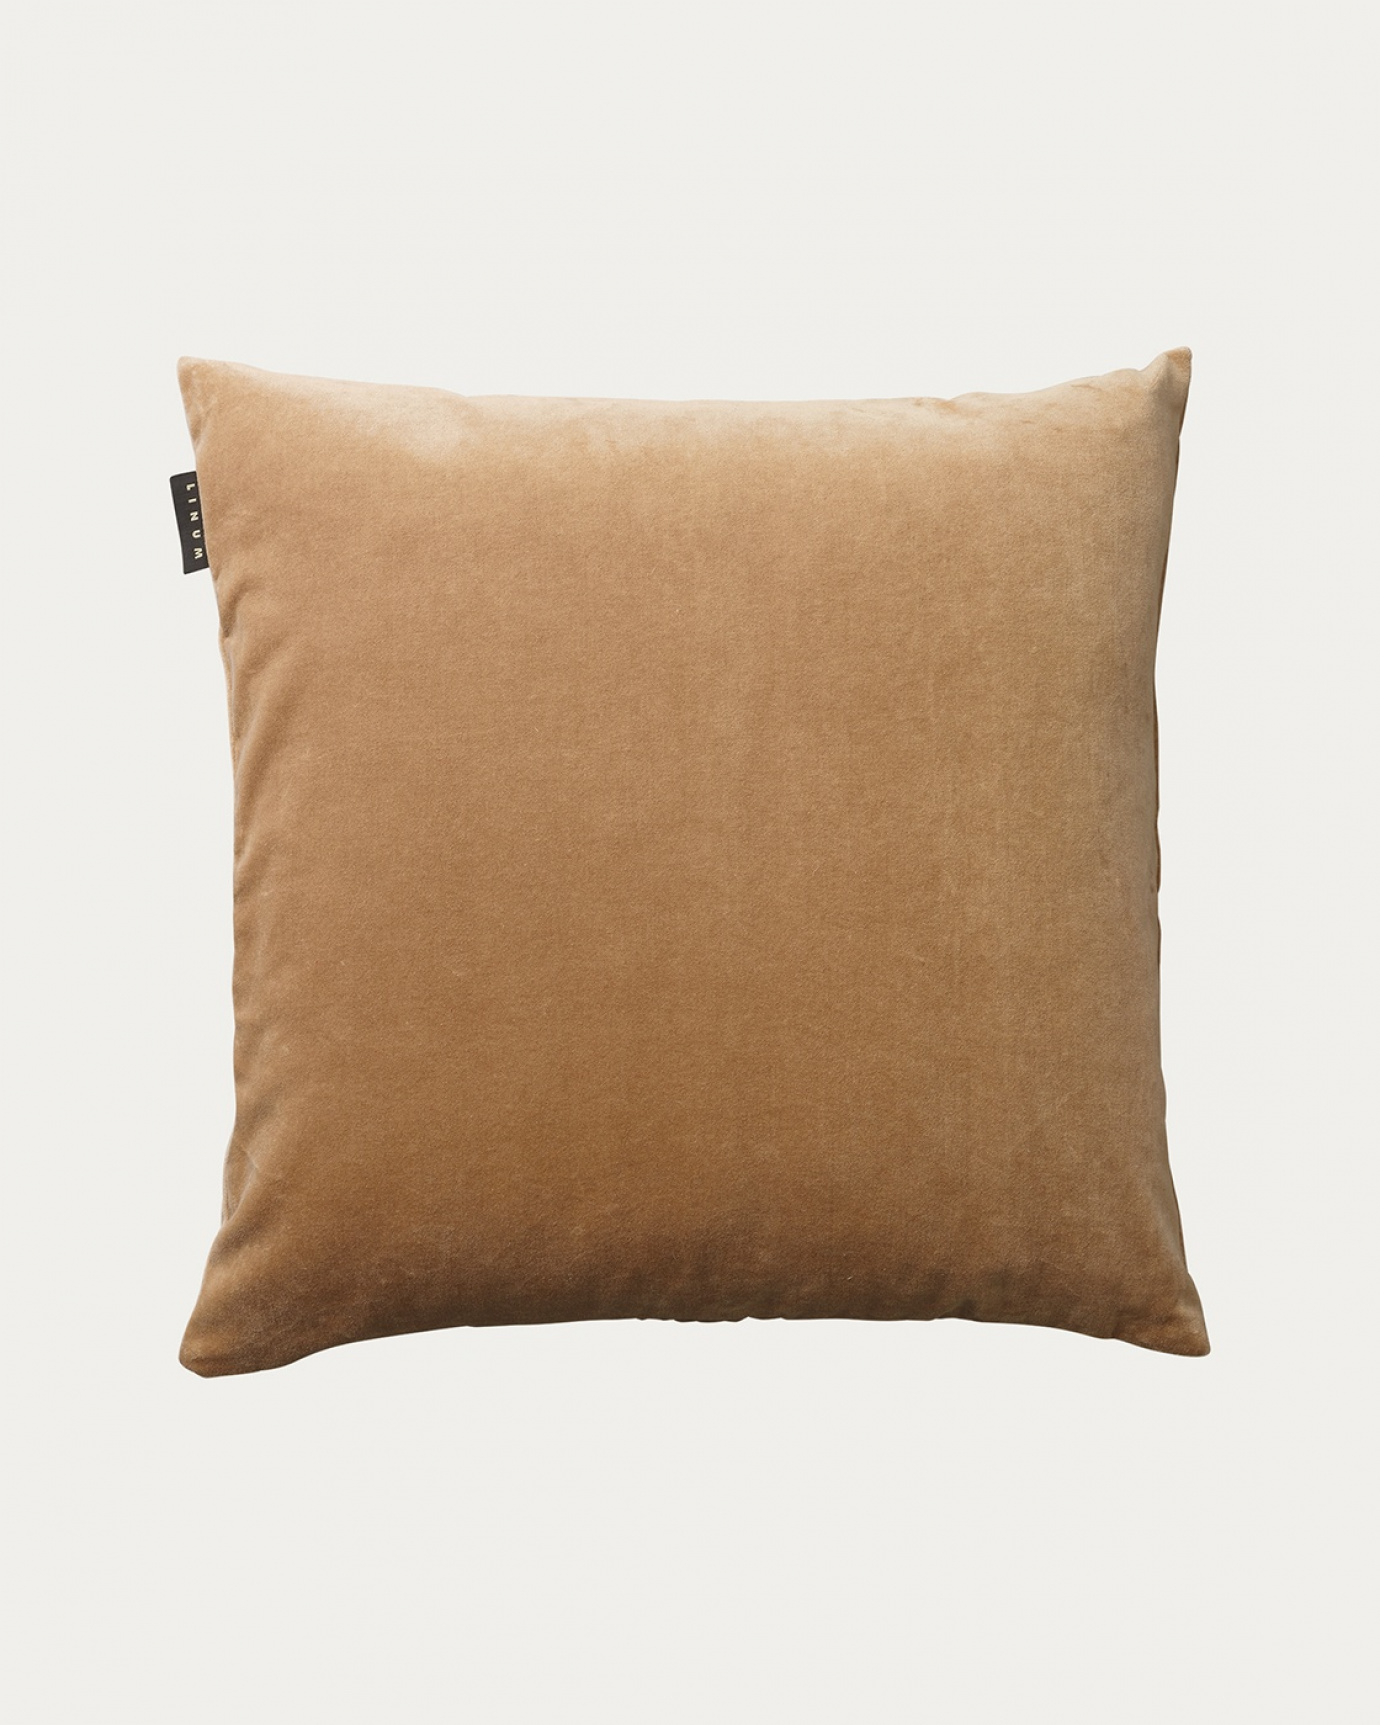 Immagine prodotto marrone cammello PAOLO copricuscini in morbido velluto di cotone di LINUM DESIGN. Dimensioni 50x50 cm.